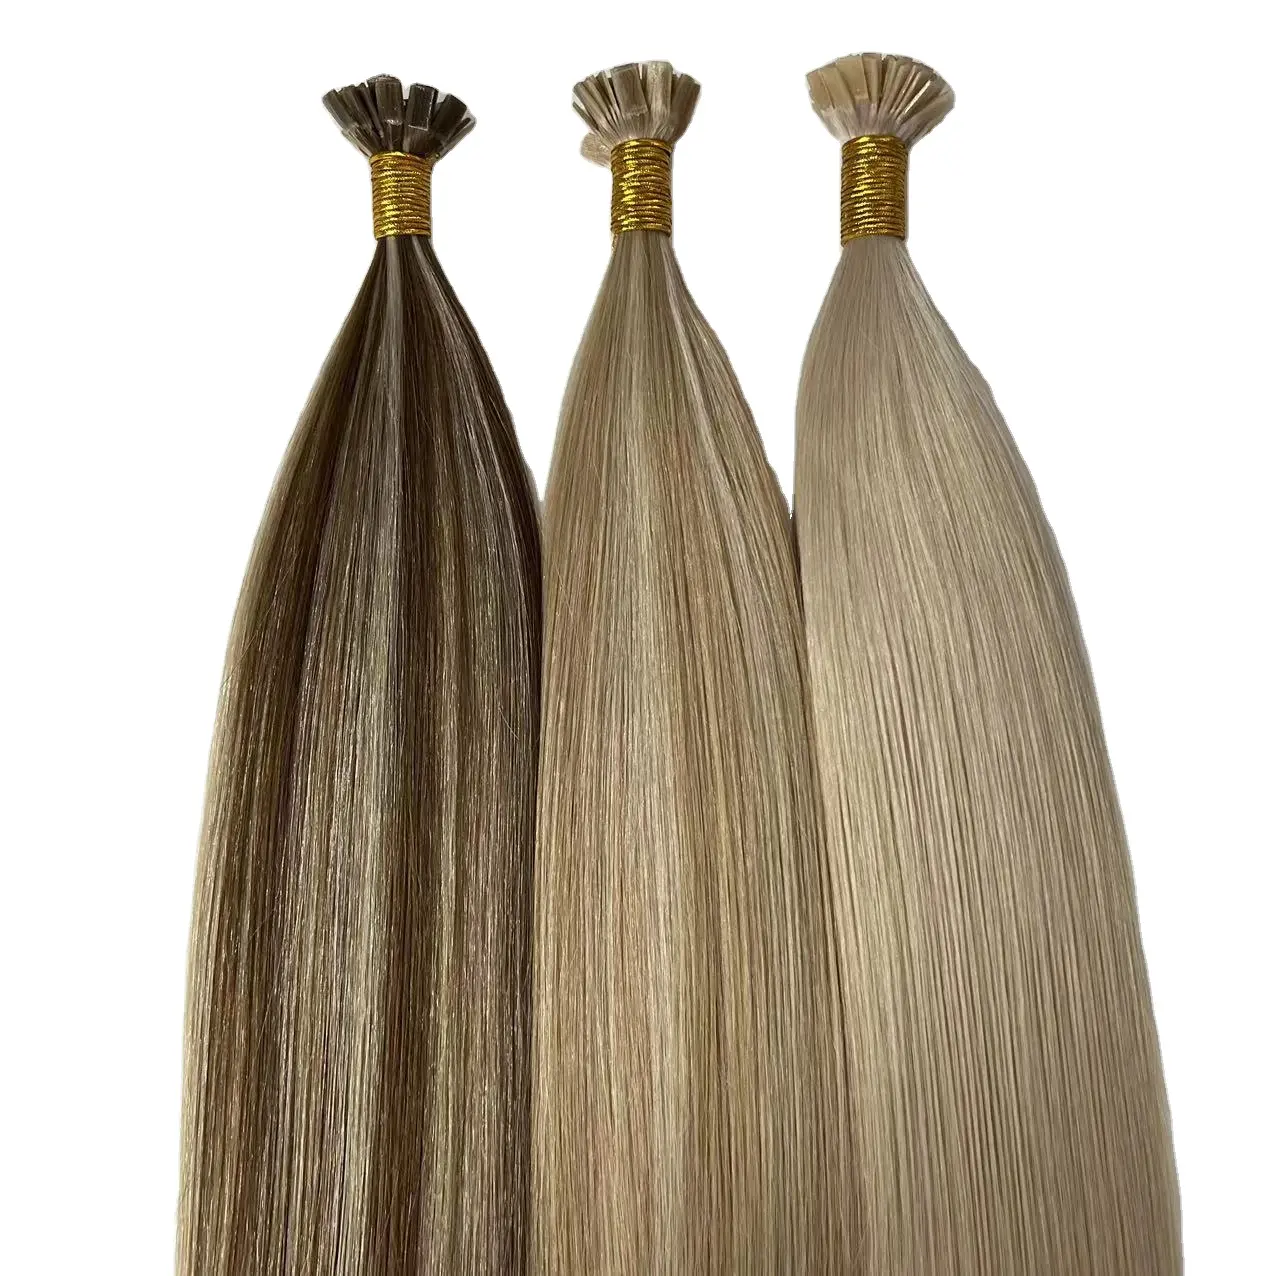 Оптовая продажа, двойные нарисованные человеческие волосы, предварительно скрепленные кератиновые накладные волосы с плоским кончиком, итальянский клей, натуральные волосы на заказ